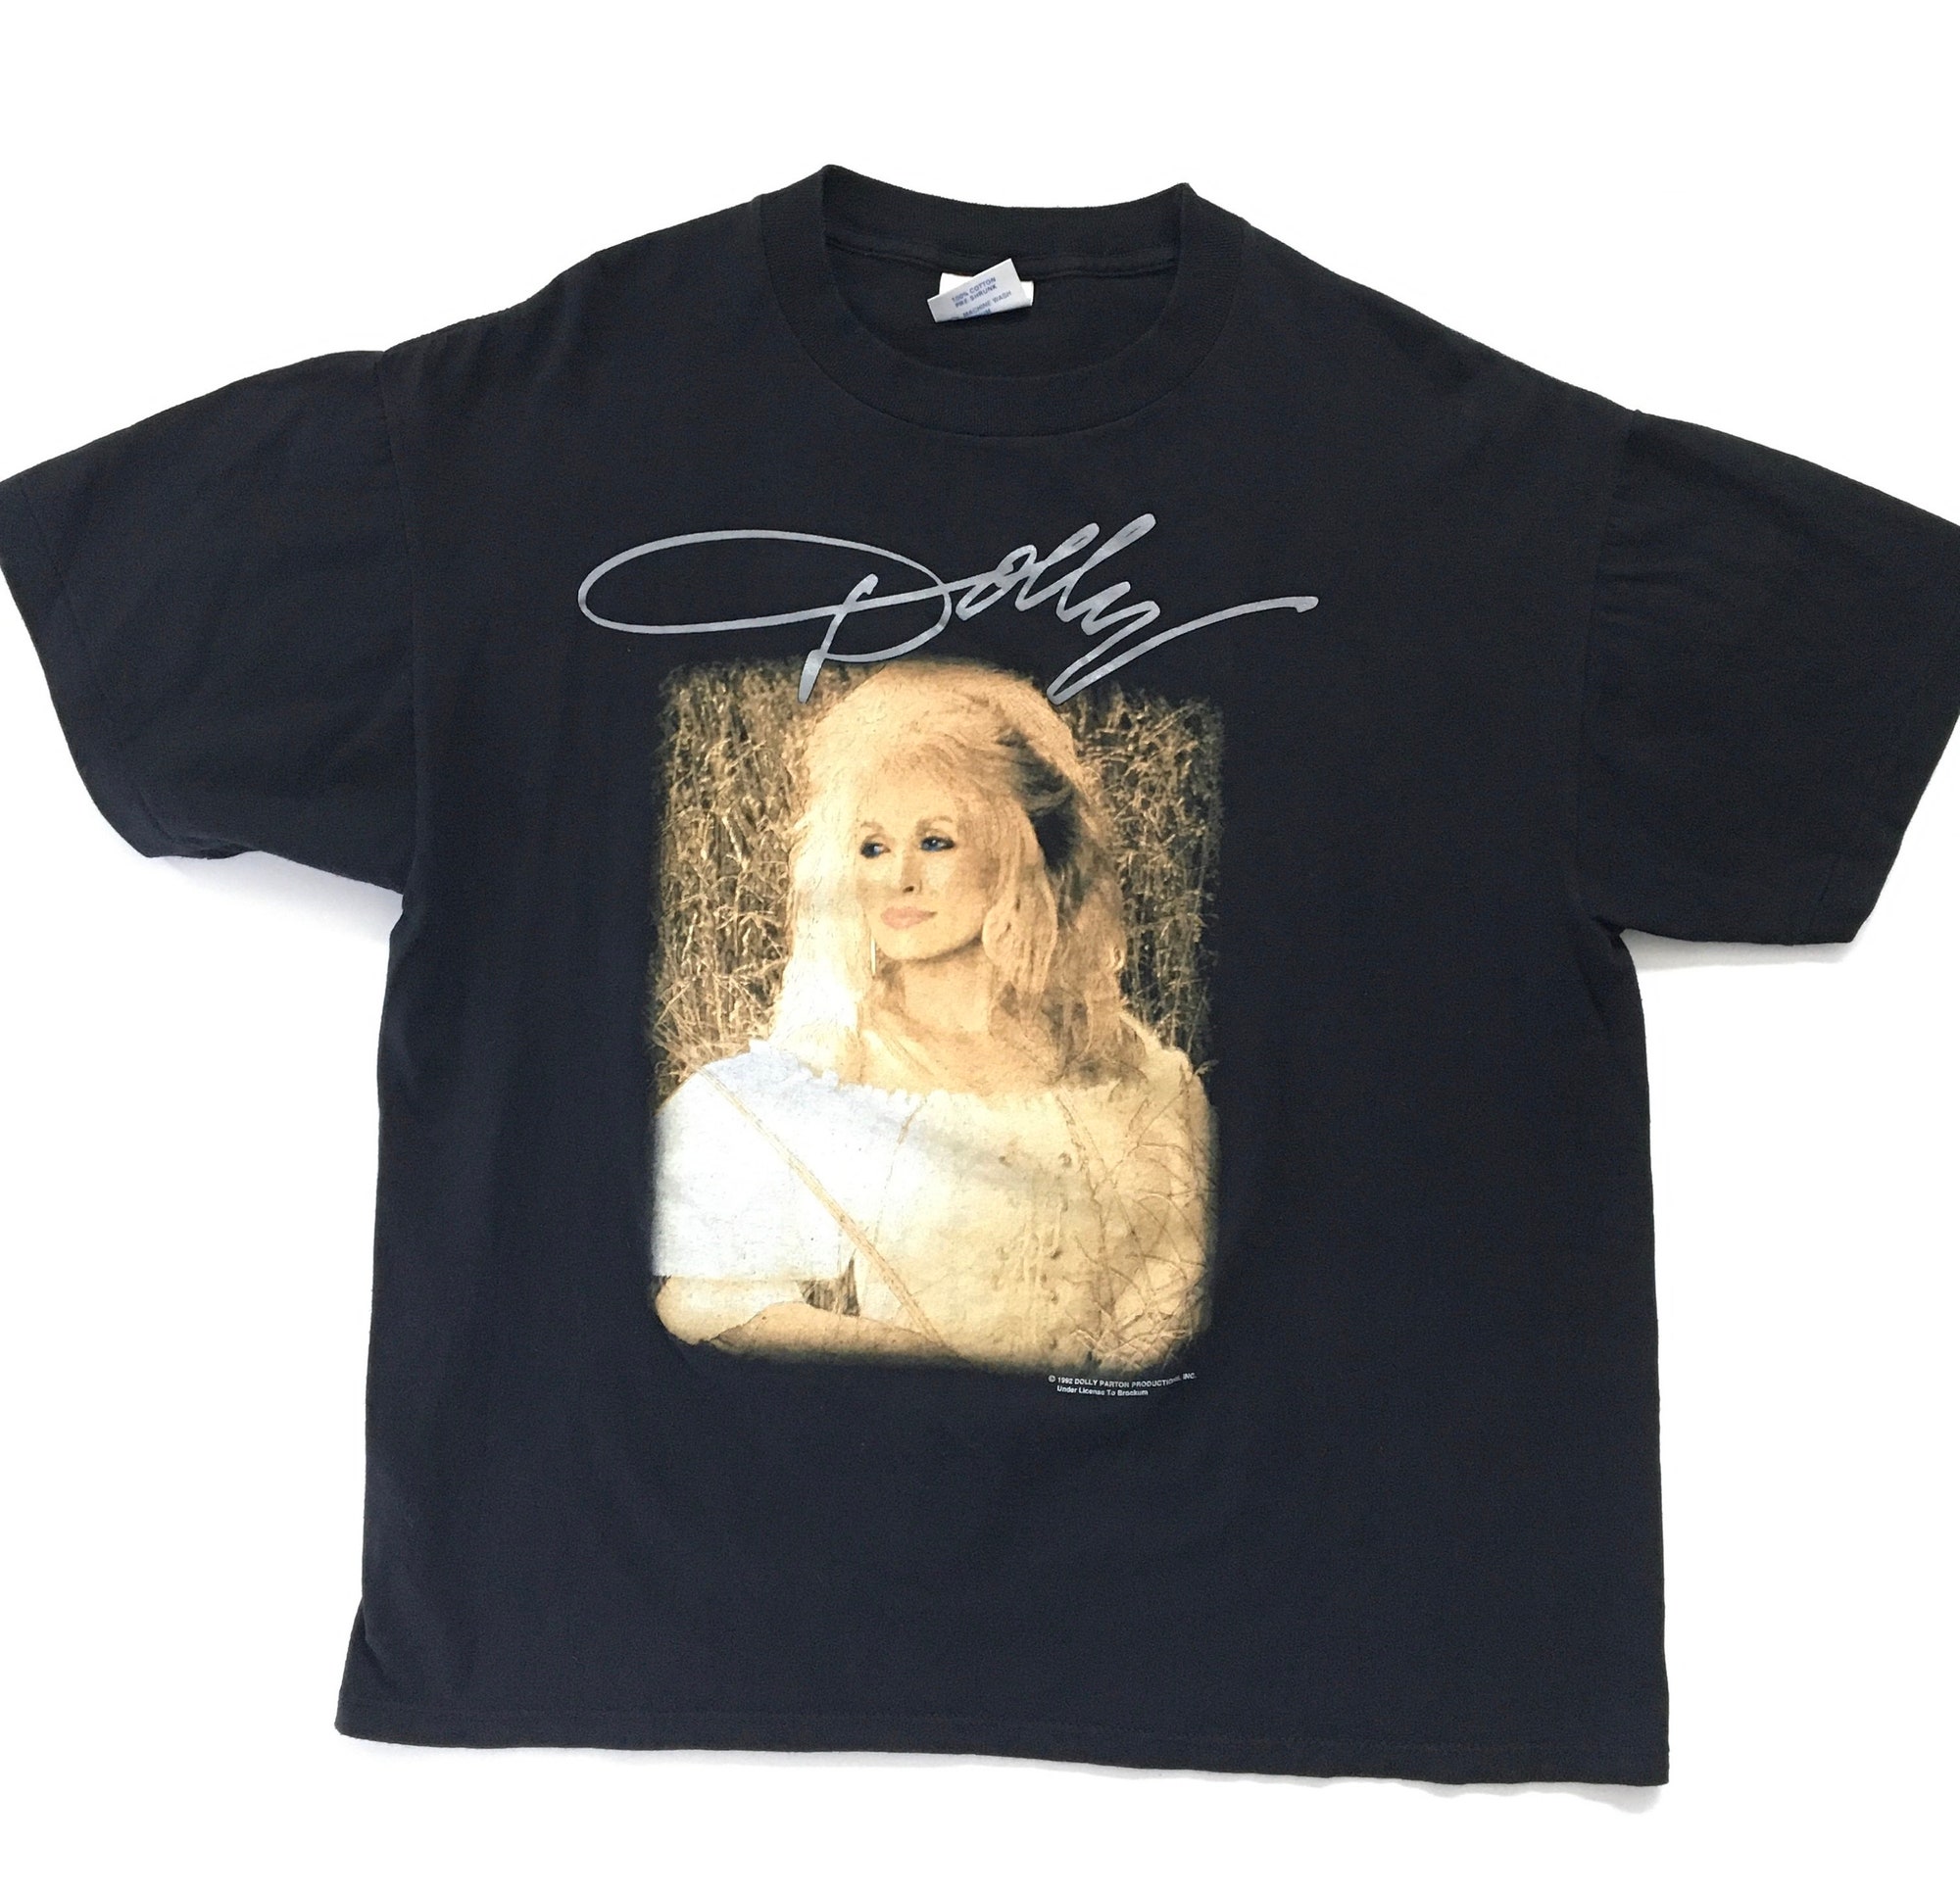 Discover Vintage 90s DOLLY Parton Tour T-Shirt